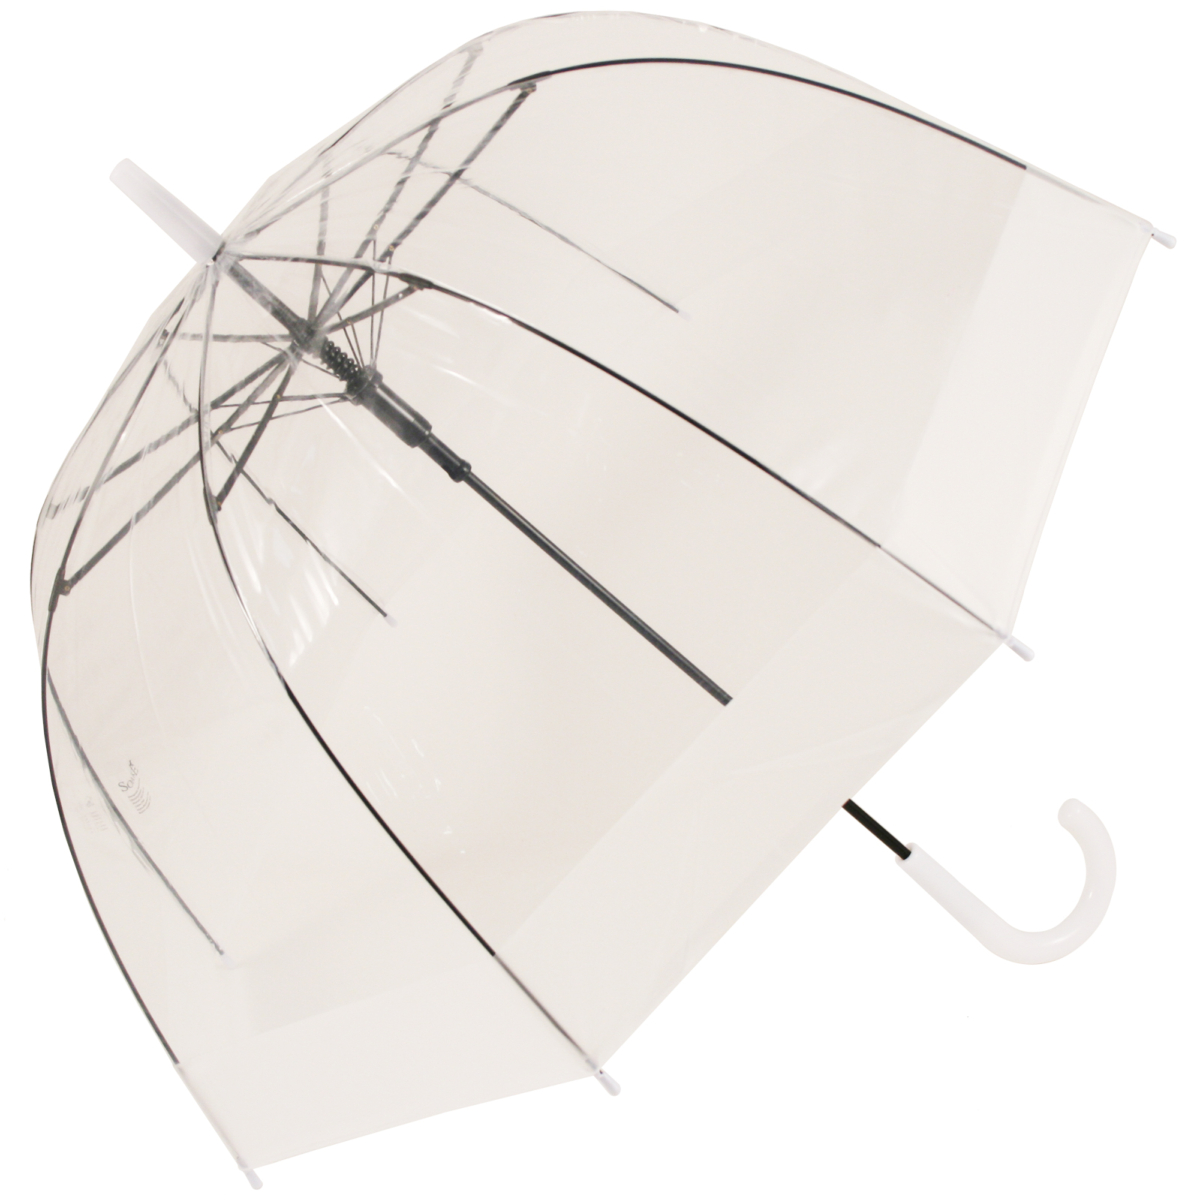 Soake Clear Dome Umbrella - White